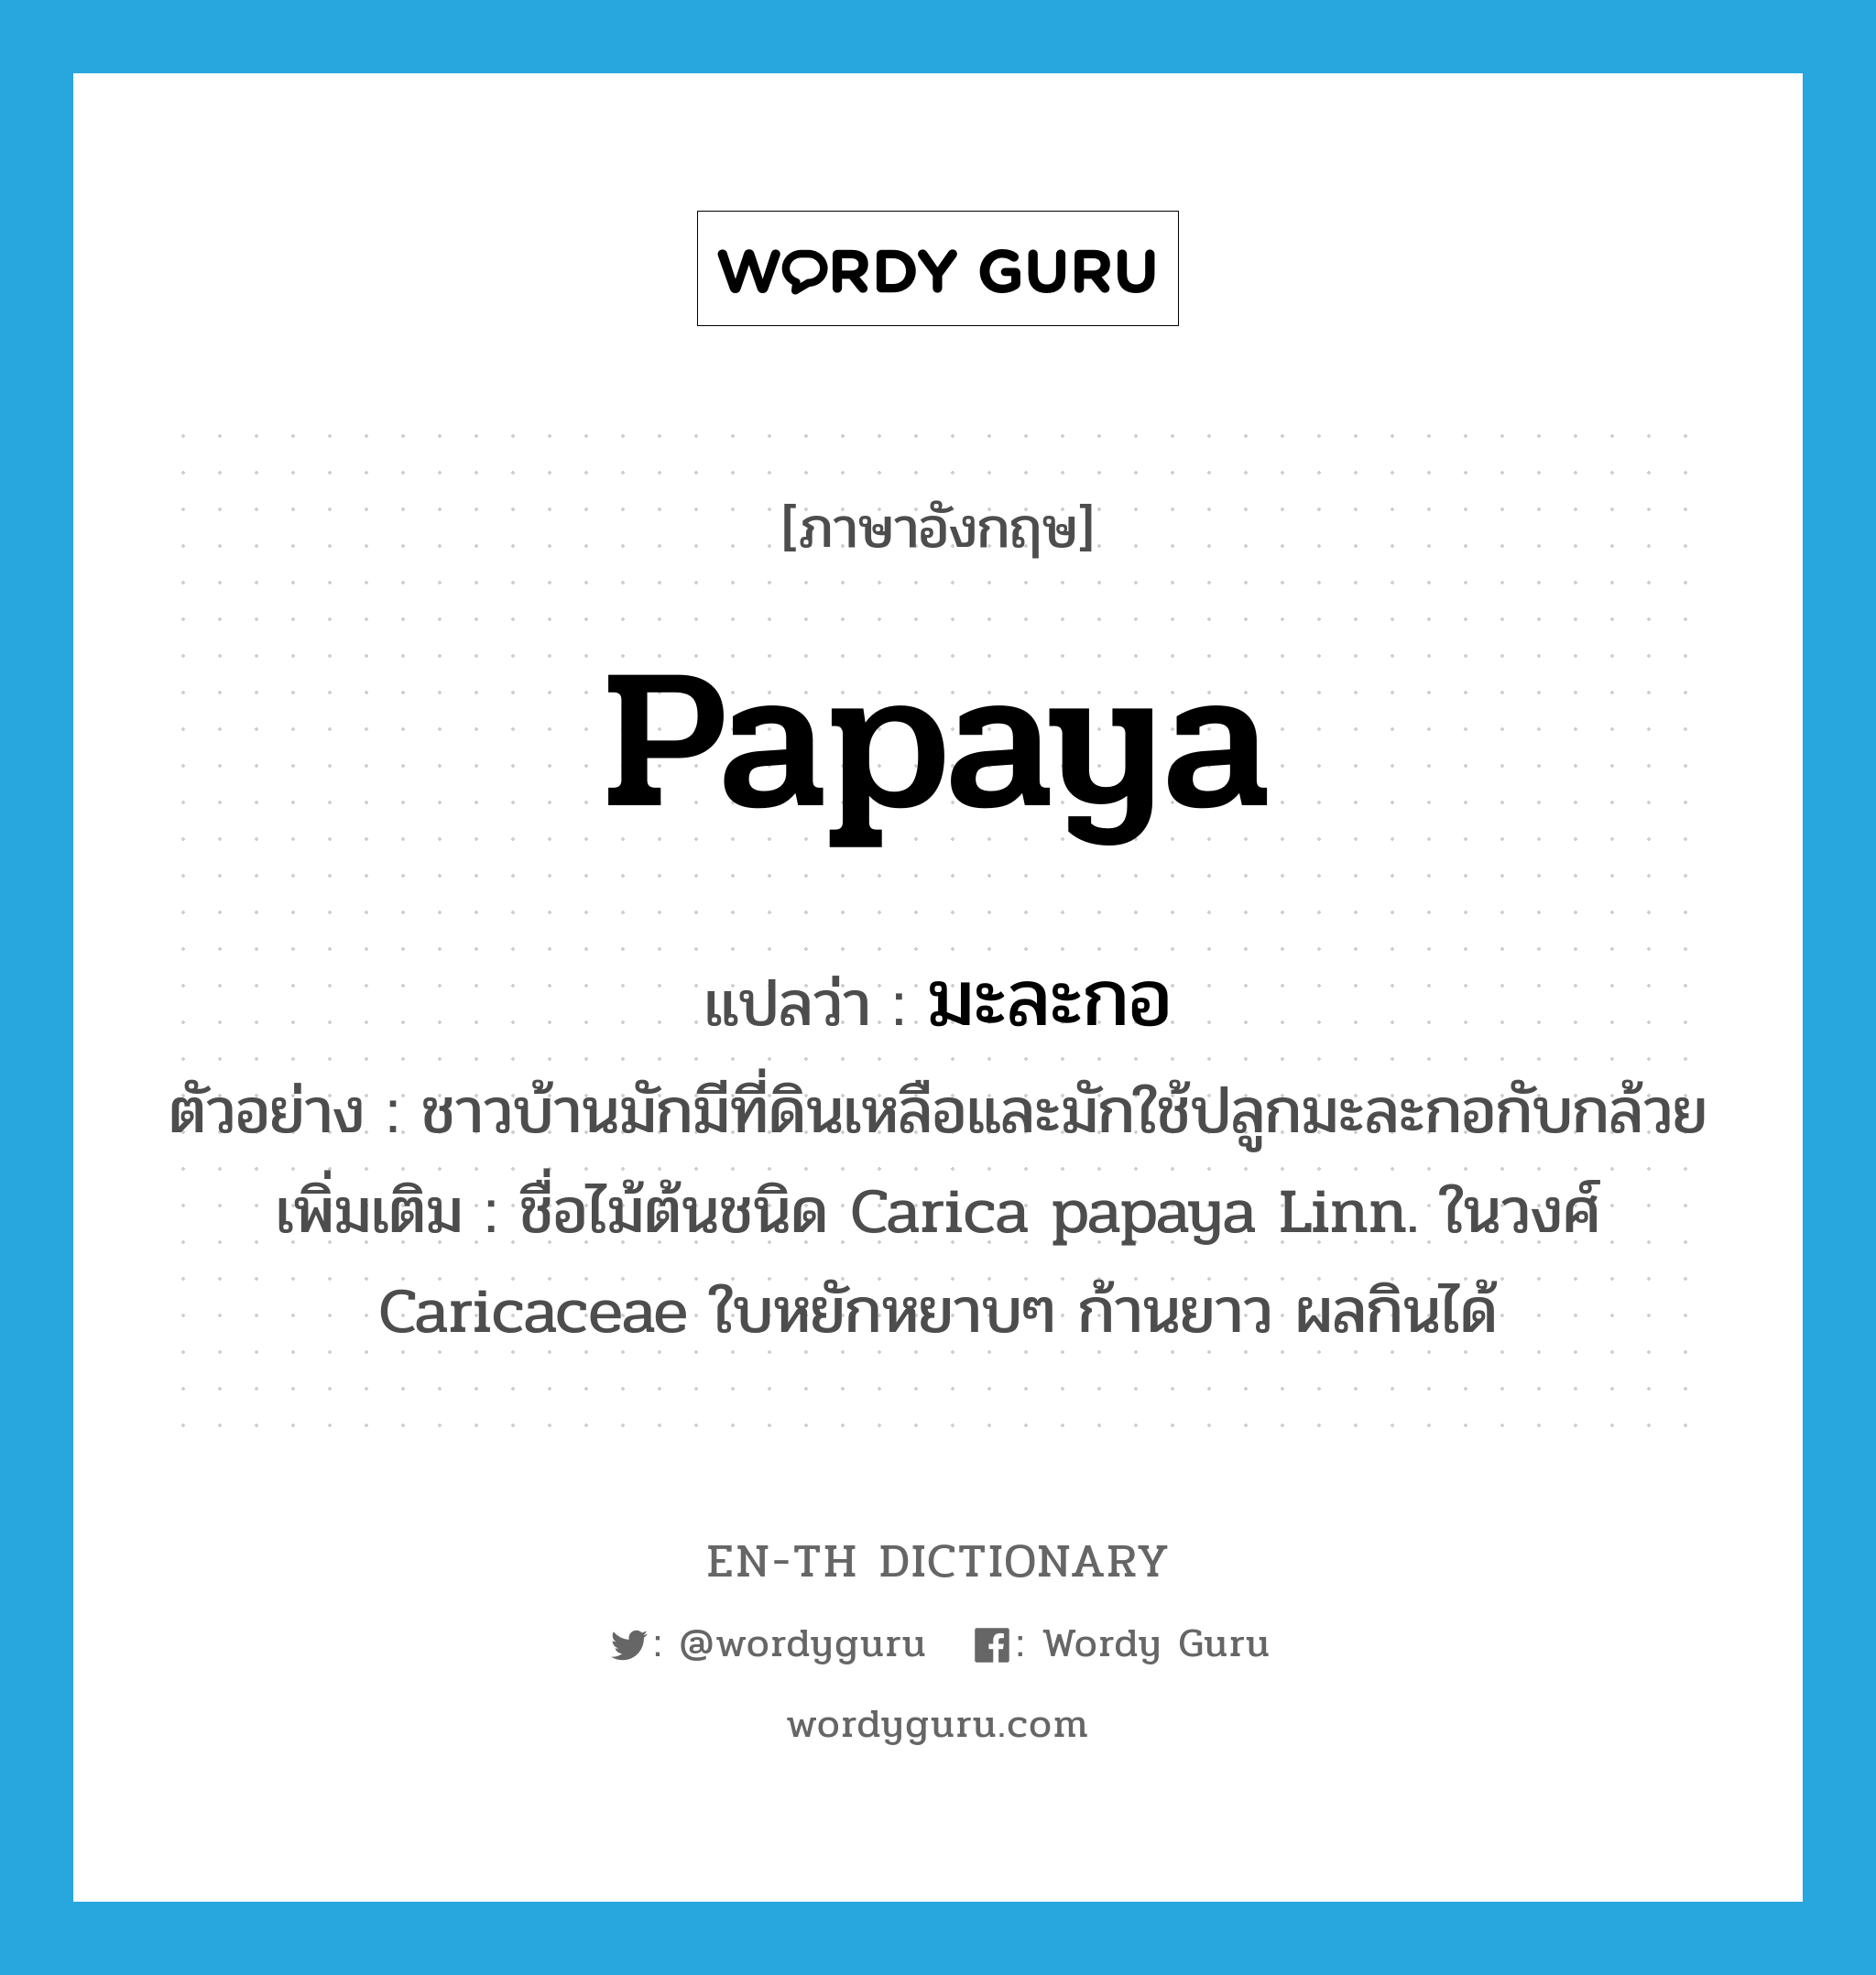 papaya แปลว่า?, คำศัพท์ภาษาอังกฤษ papaya แปลว่า มะละกอ ประเภท N ตัวอย่าง ชาวบ้านมักมีที่ดินเหลือและมักใช้ปลูกมะละกอกับกล้วย เพิ่มเติม ชื่อไม้ต้นชนิด Carica papaya Linn. ในวงศ์ Caricaceae ใบหยักหยาบๆ ก้านยาว ผลกินได้ หมวด N